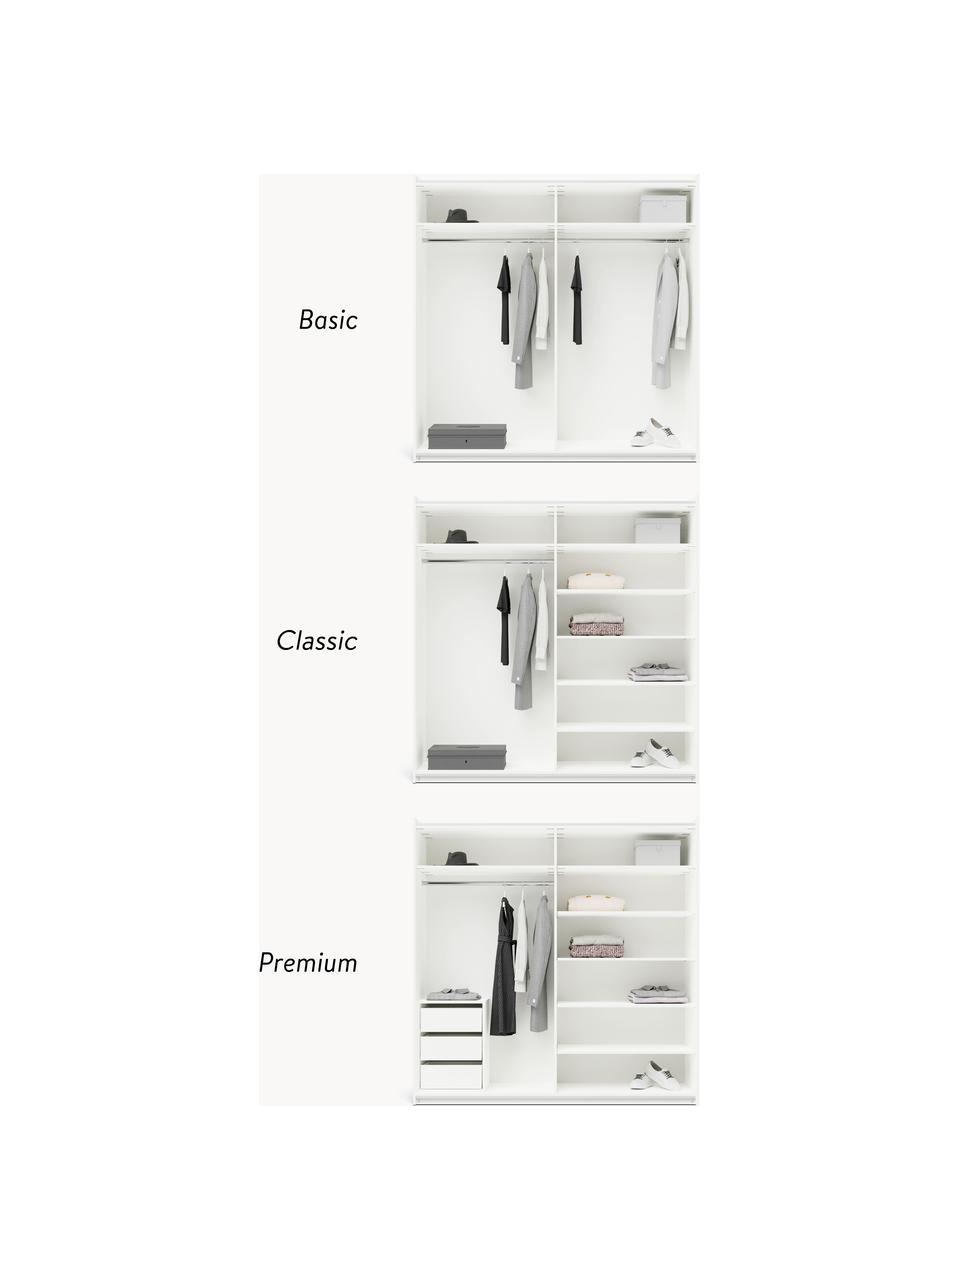 Szafa modułowa z drzwiami przesuwnymi Leon, 200 cm, różne warianty, Korpus: płyta wiórowa z certyfika, Biały, S 200 x W 236 cm, Premium